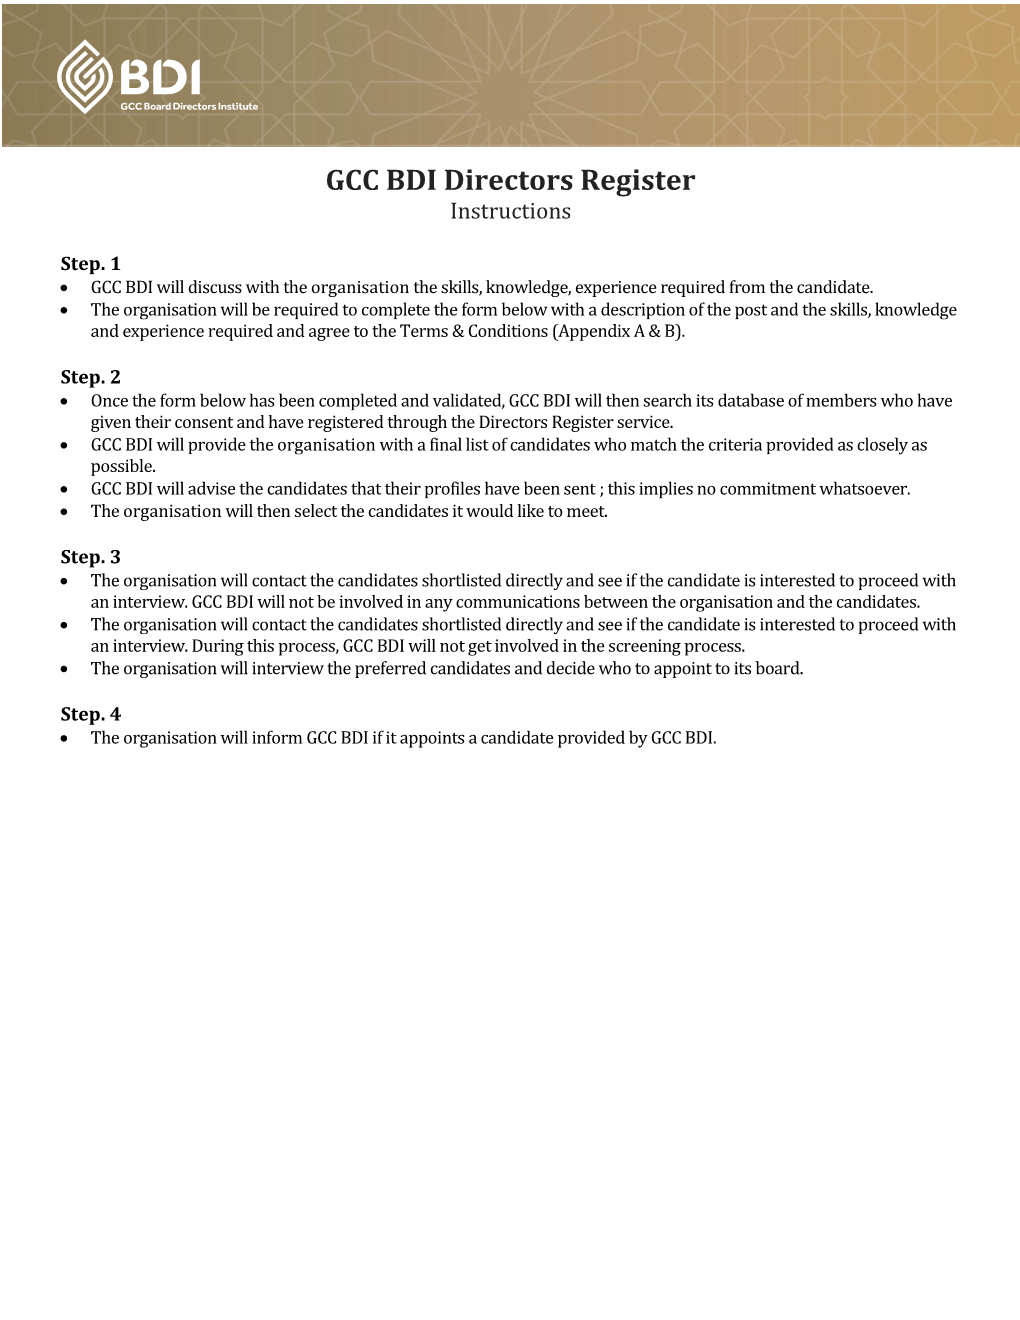 GCC BDI Directors Register Instructions